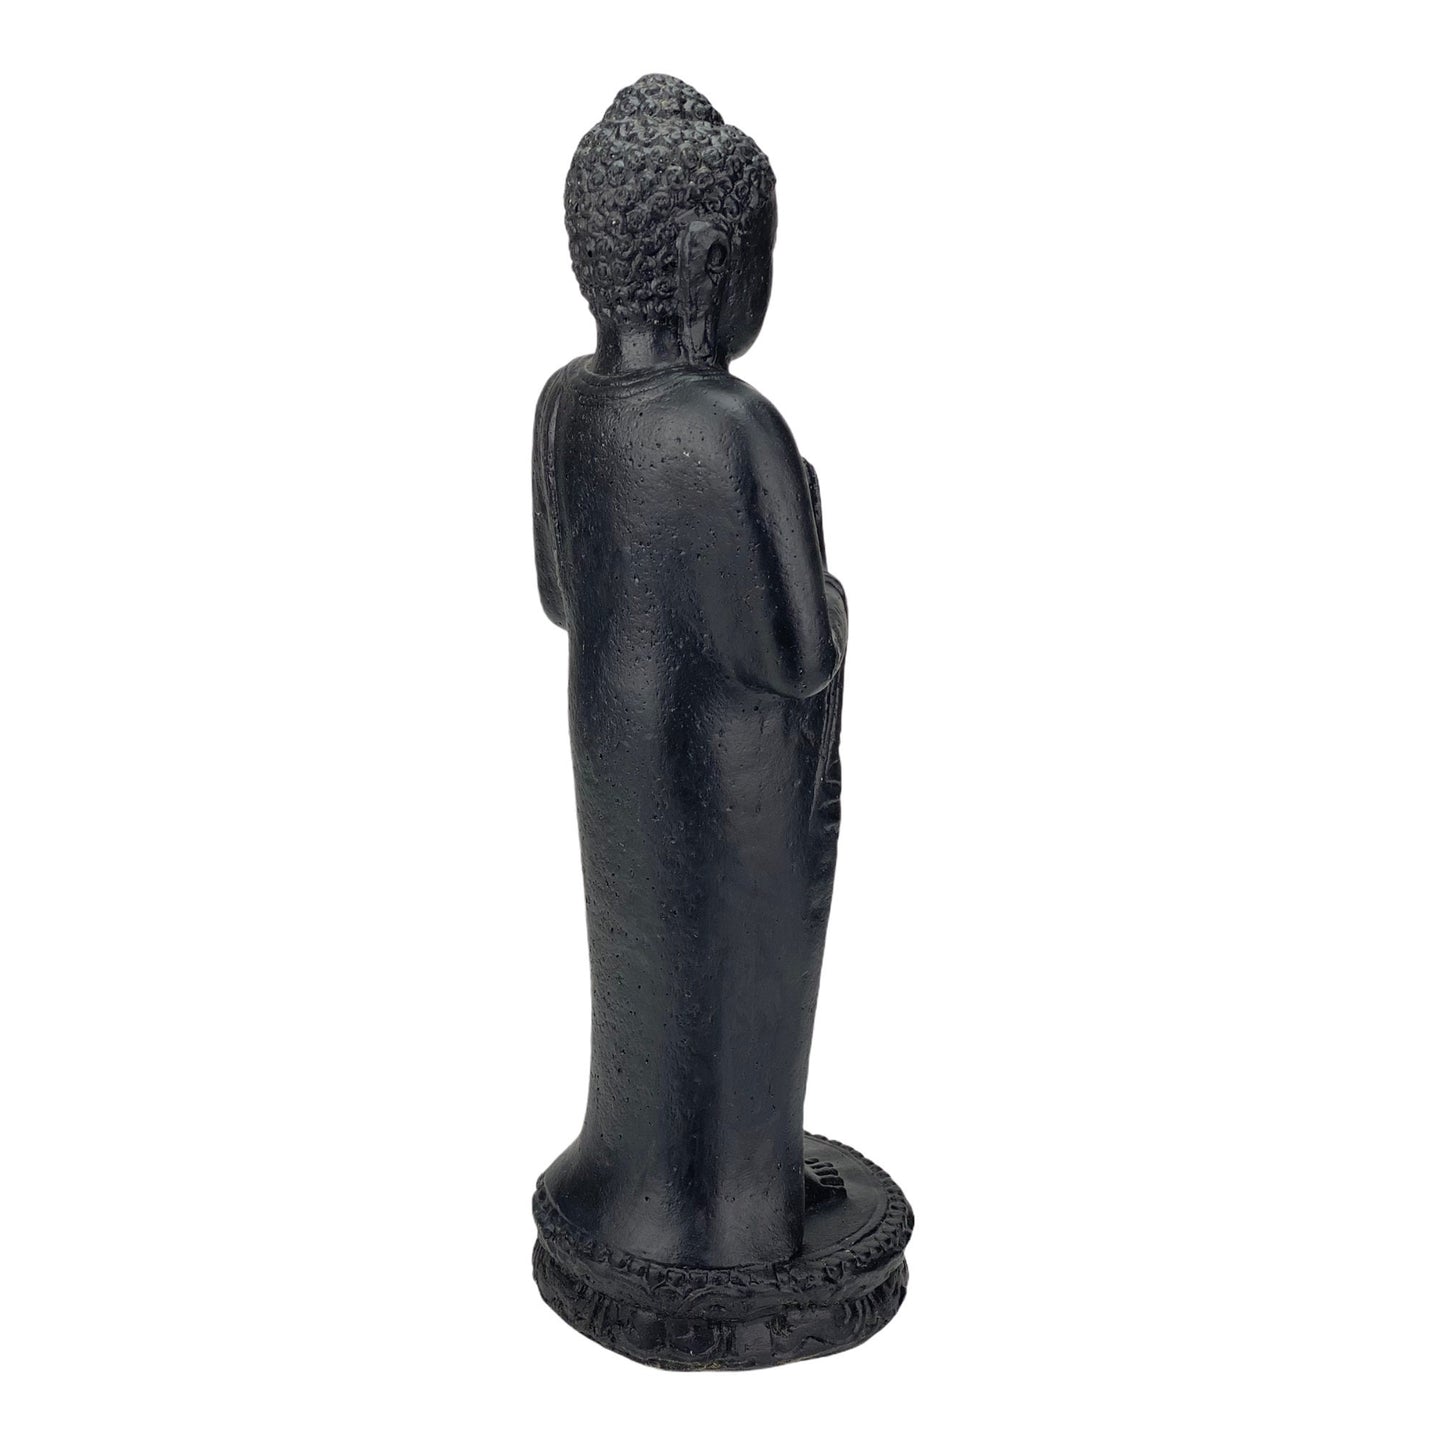 Buddha Figur Stein Garten stehend Lavasand Skulptur 50cm Wetterfest Schwarz